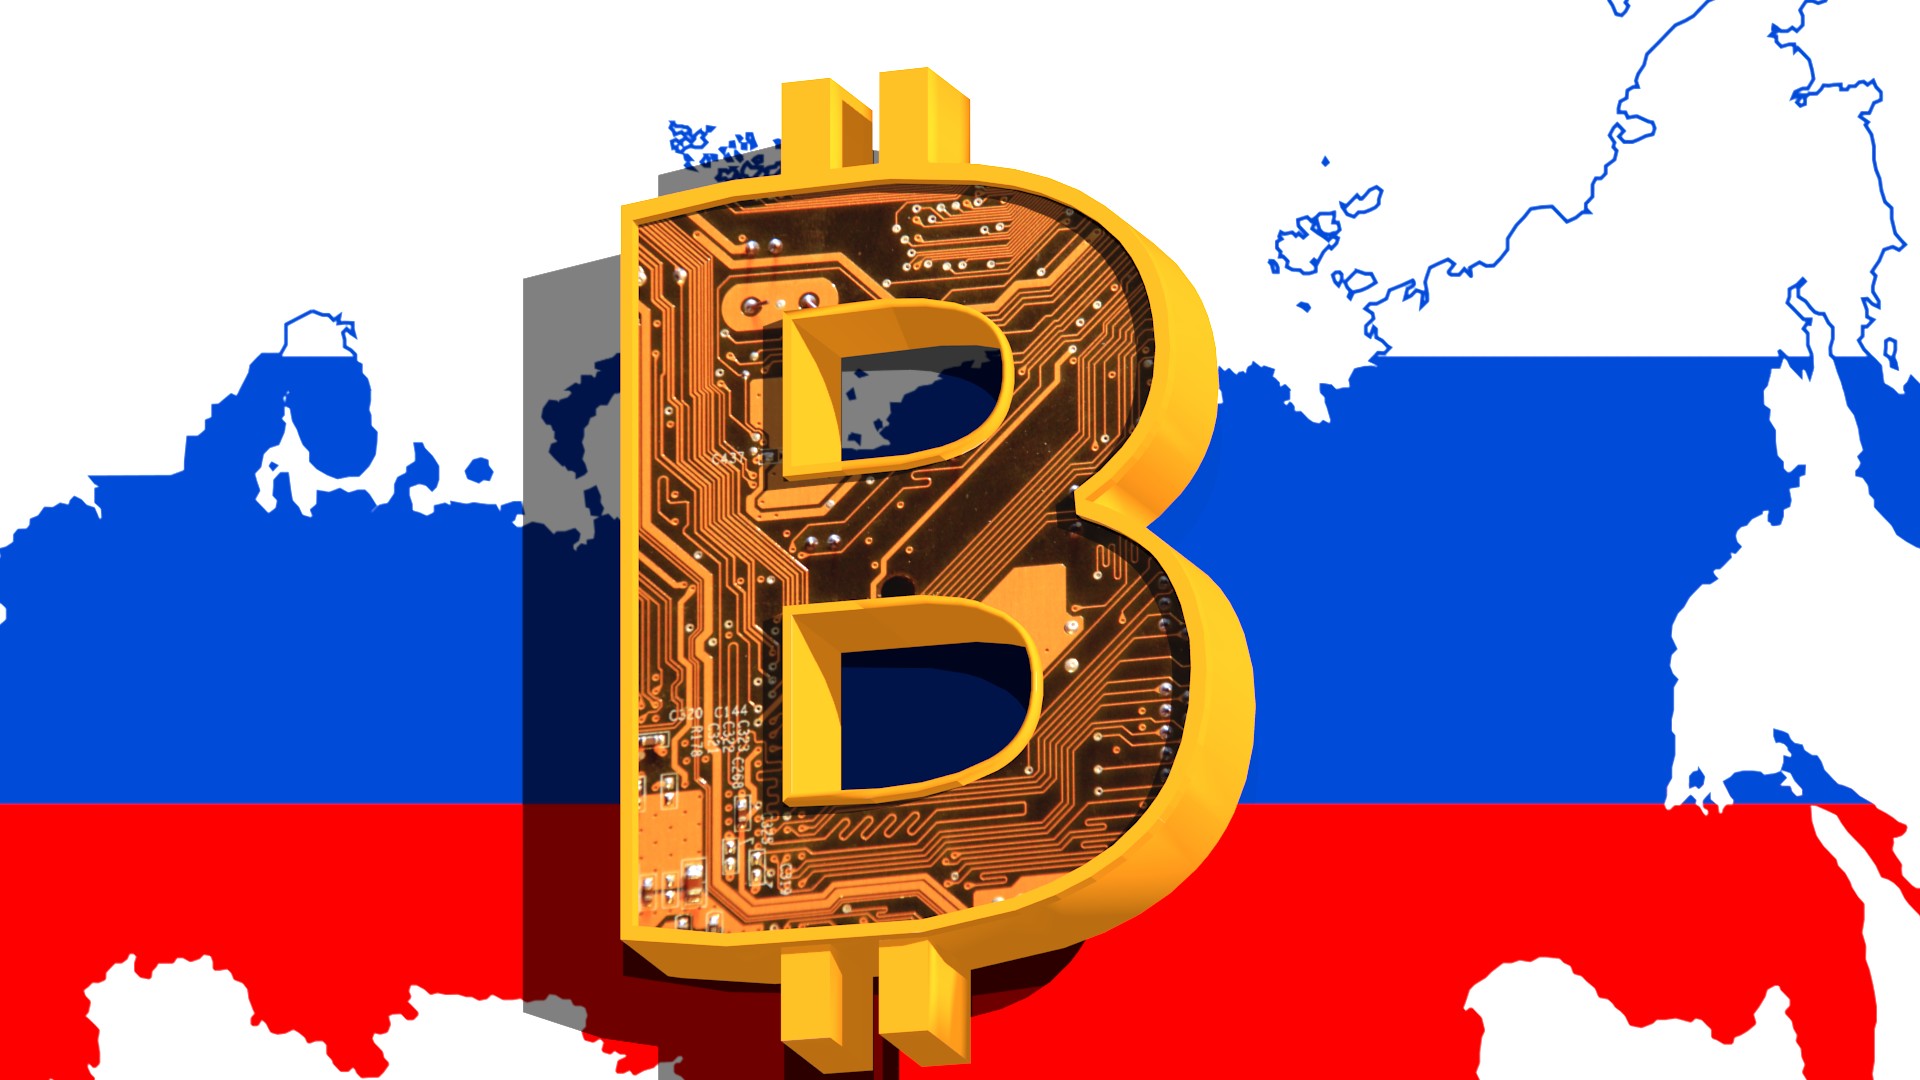 「星空财经」肖磊：俄罗斯准备投资比特币的消息值得高度重视 比特币非常符合俄罗斯政府的需求